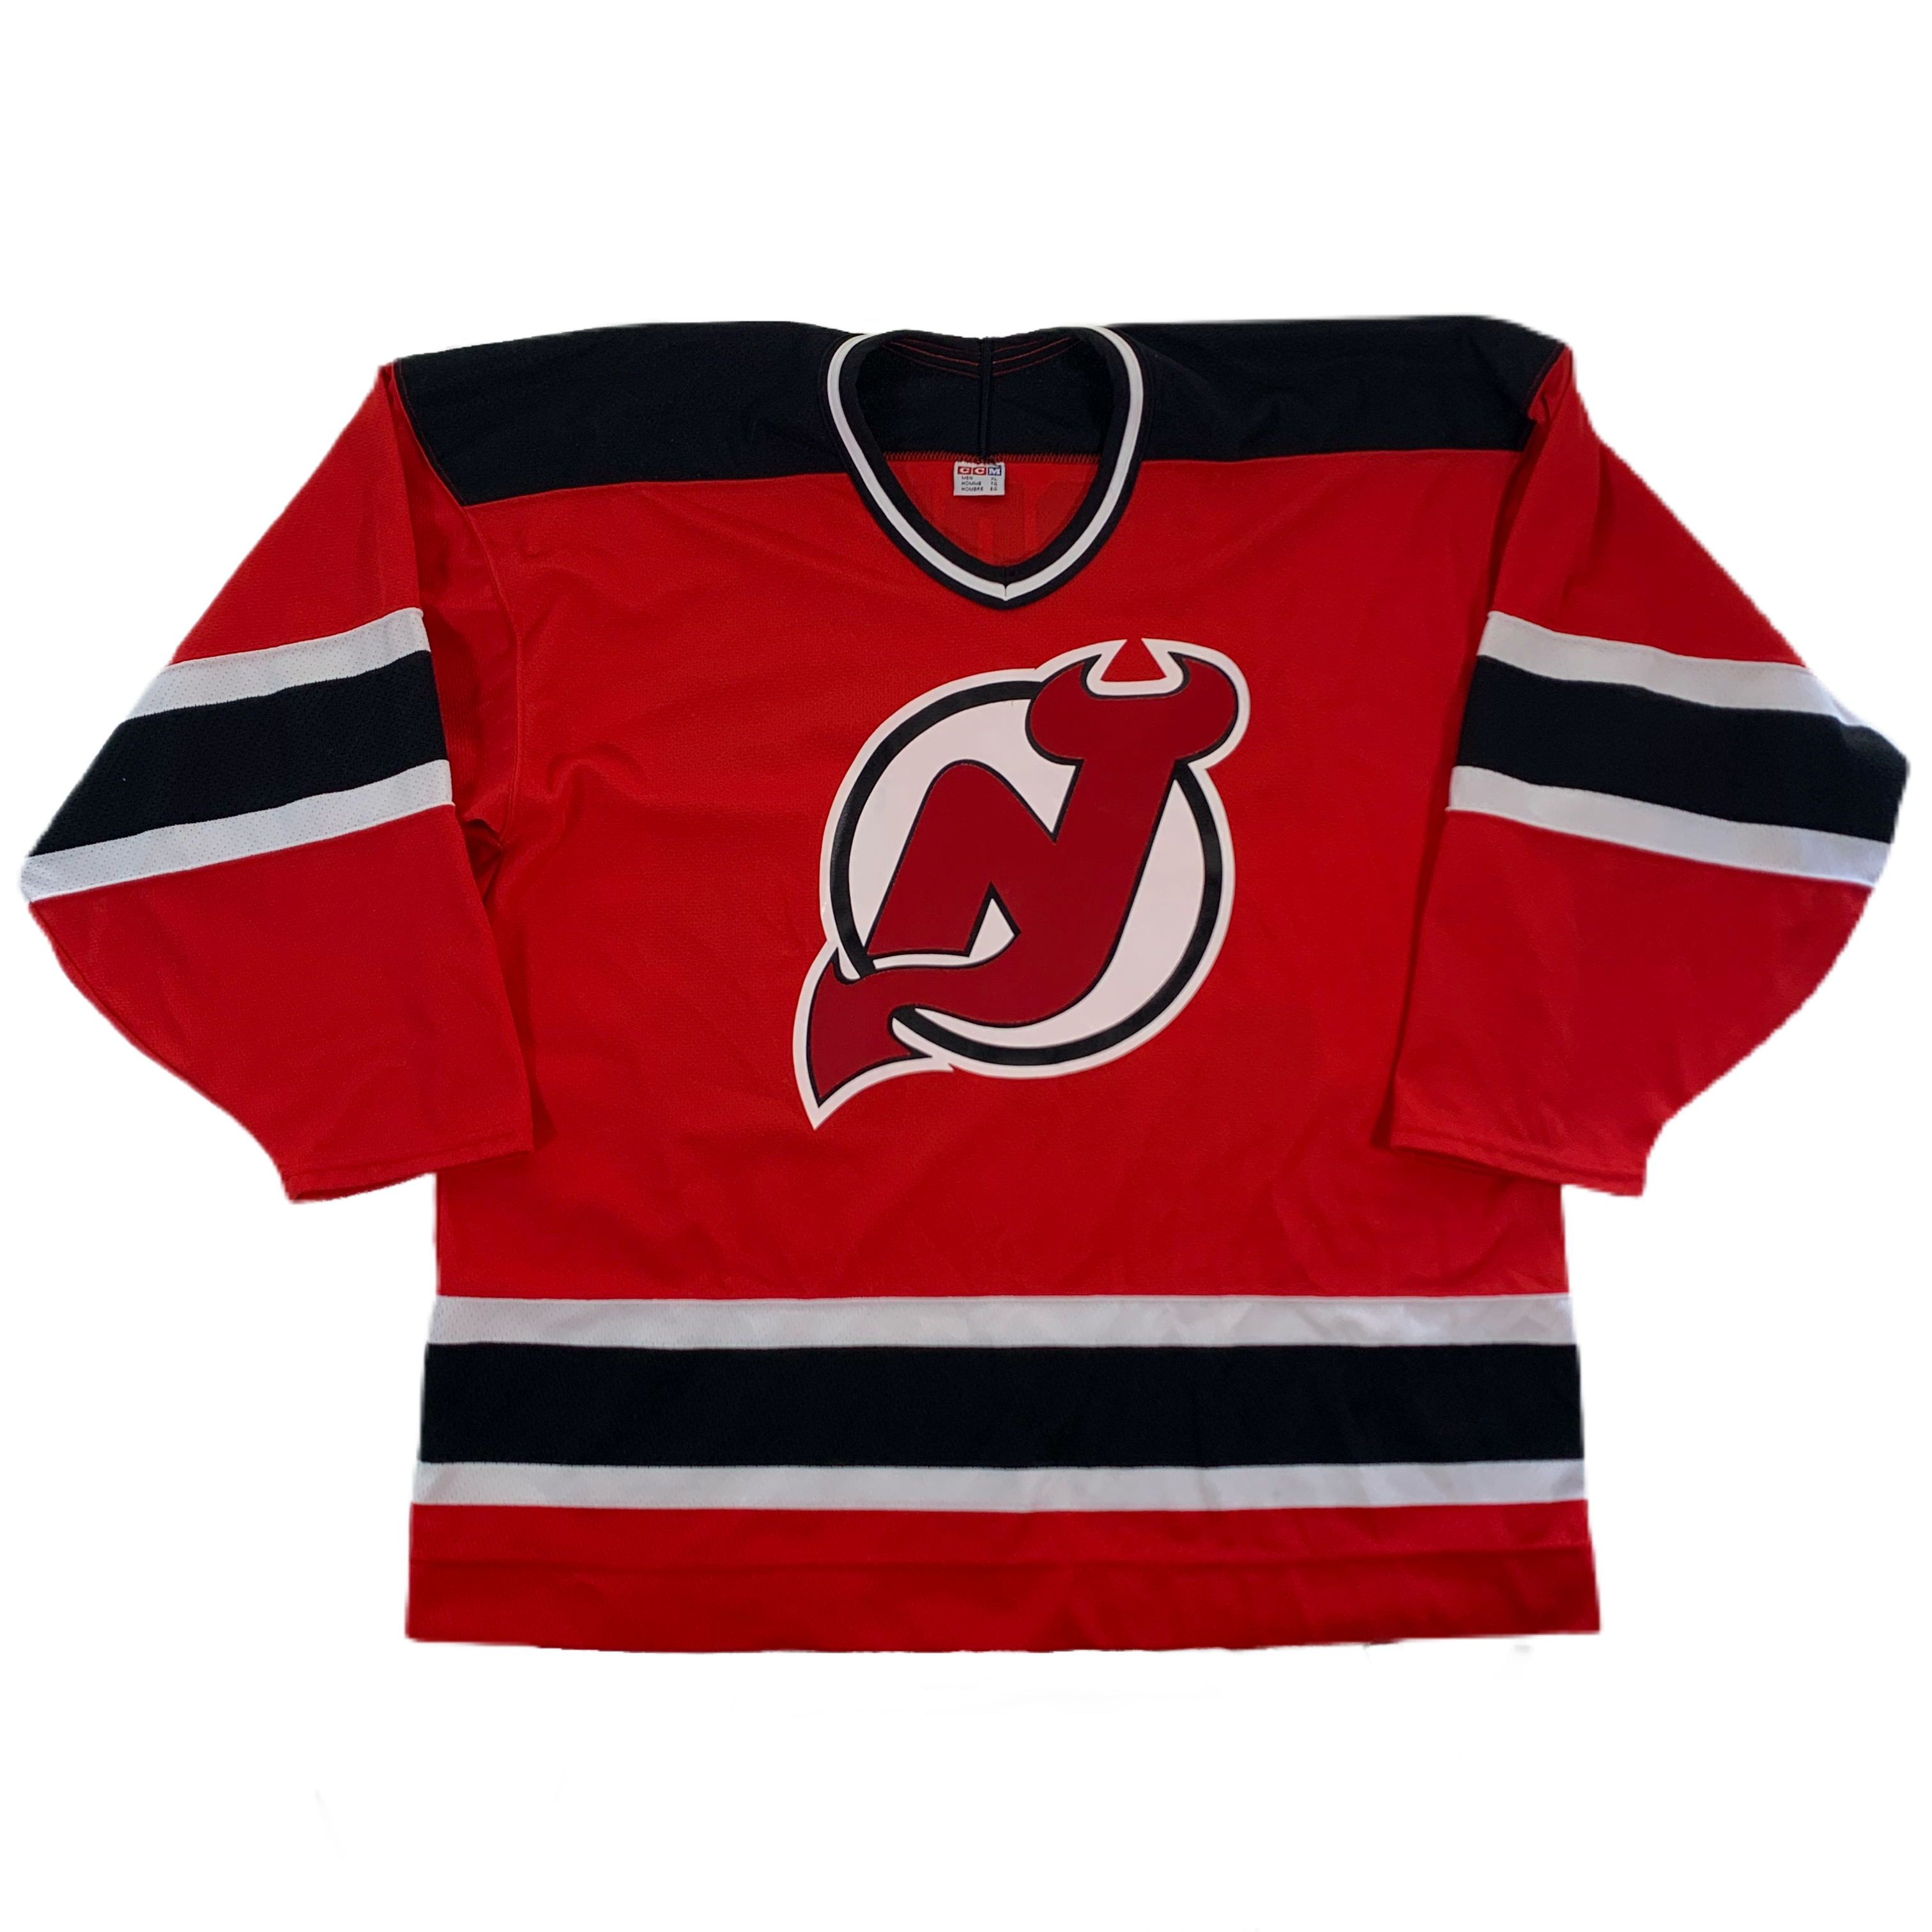 New Jersey Devils Gear, Devils Jerseys, Store, Devils Pro Shop, Jersey  Devils Hockey Apparel